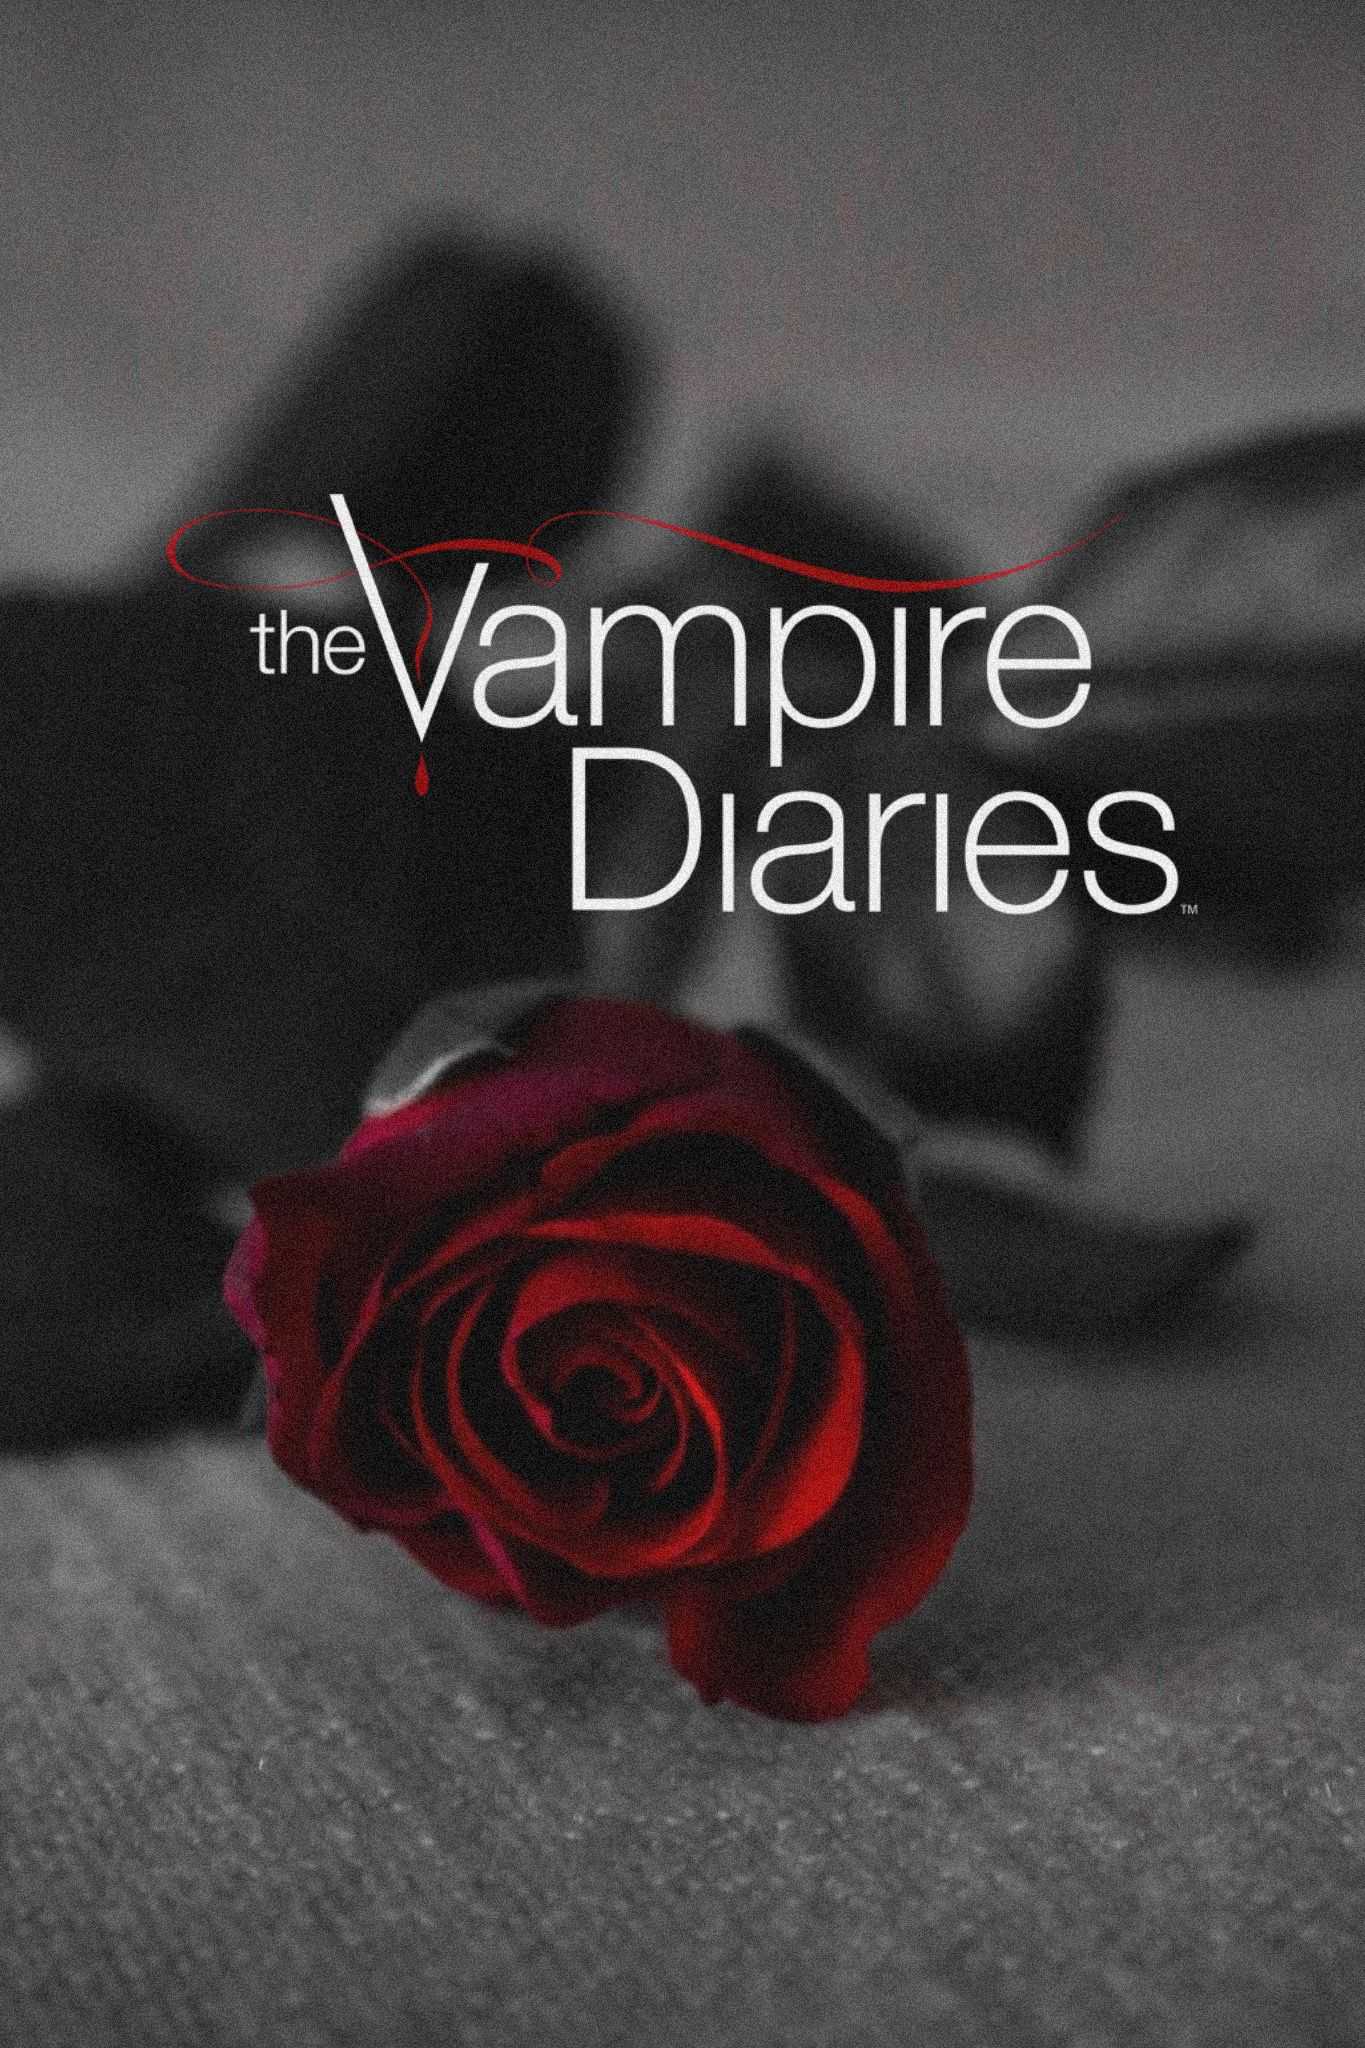 The Vampire Diaries Wallpaper